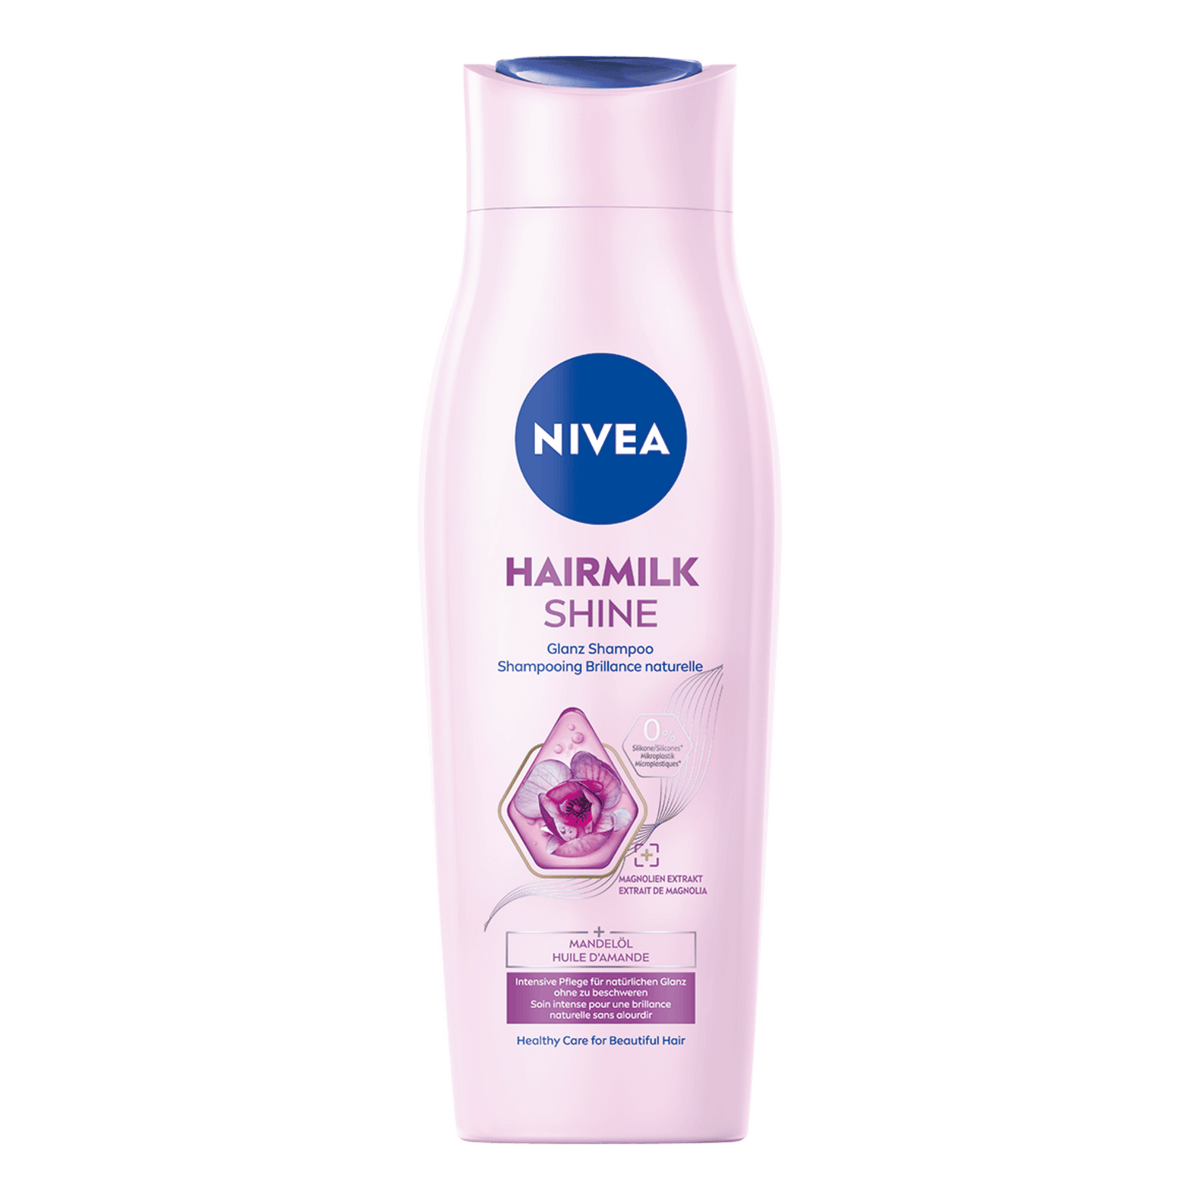 Primary Image of Hairmilk Shine Shampoo